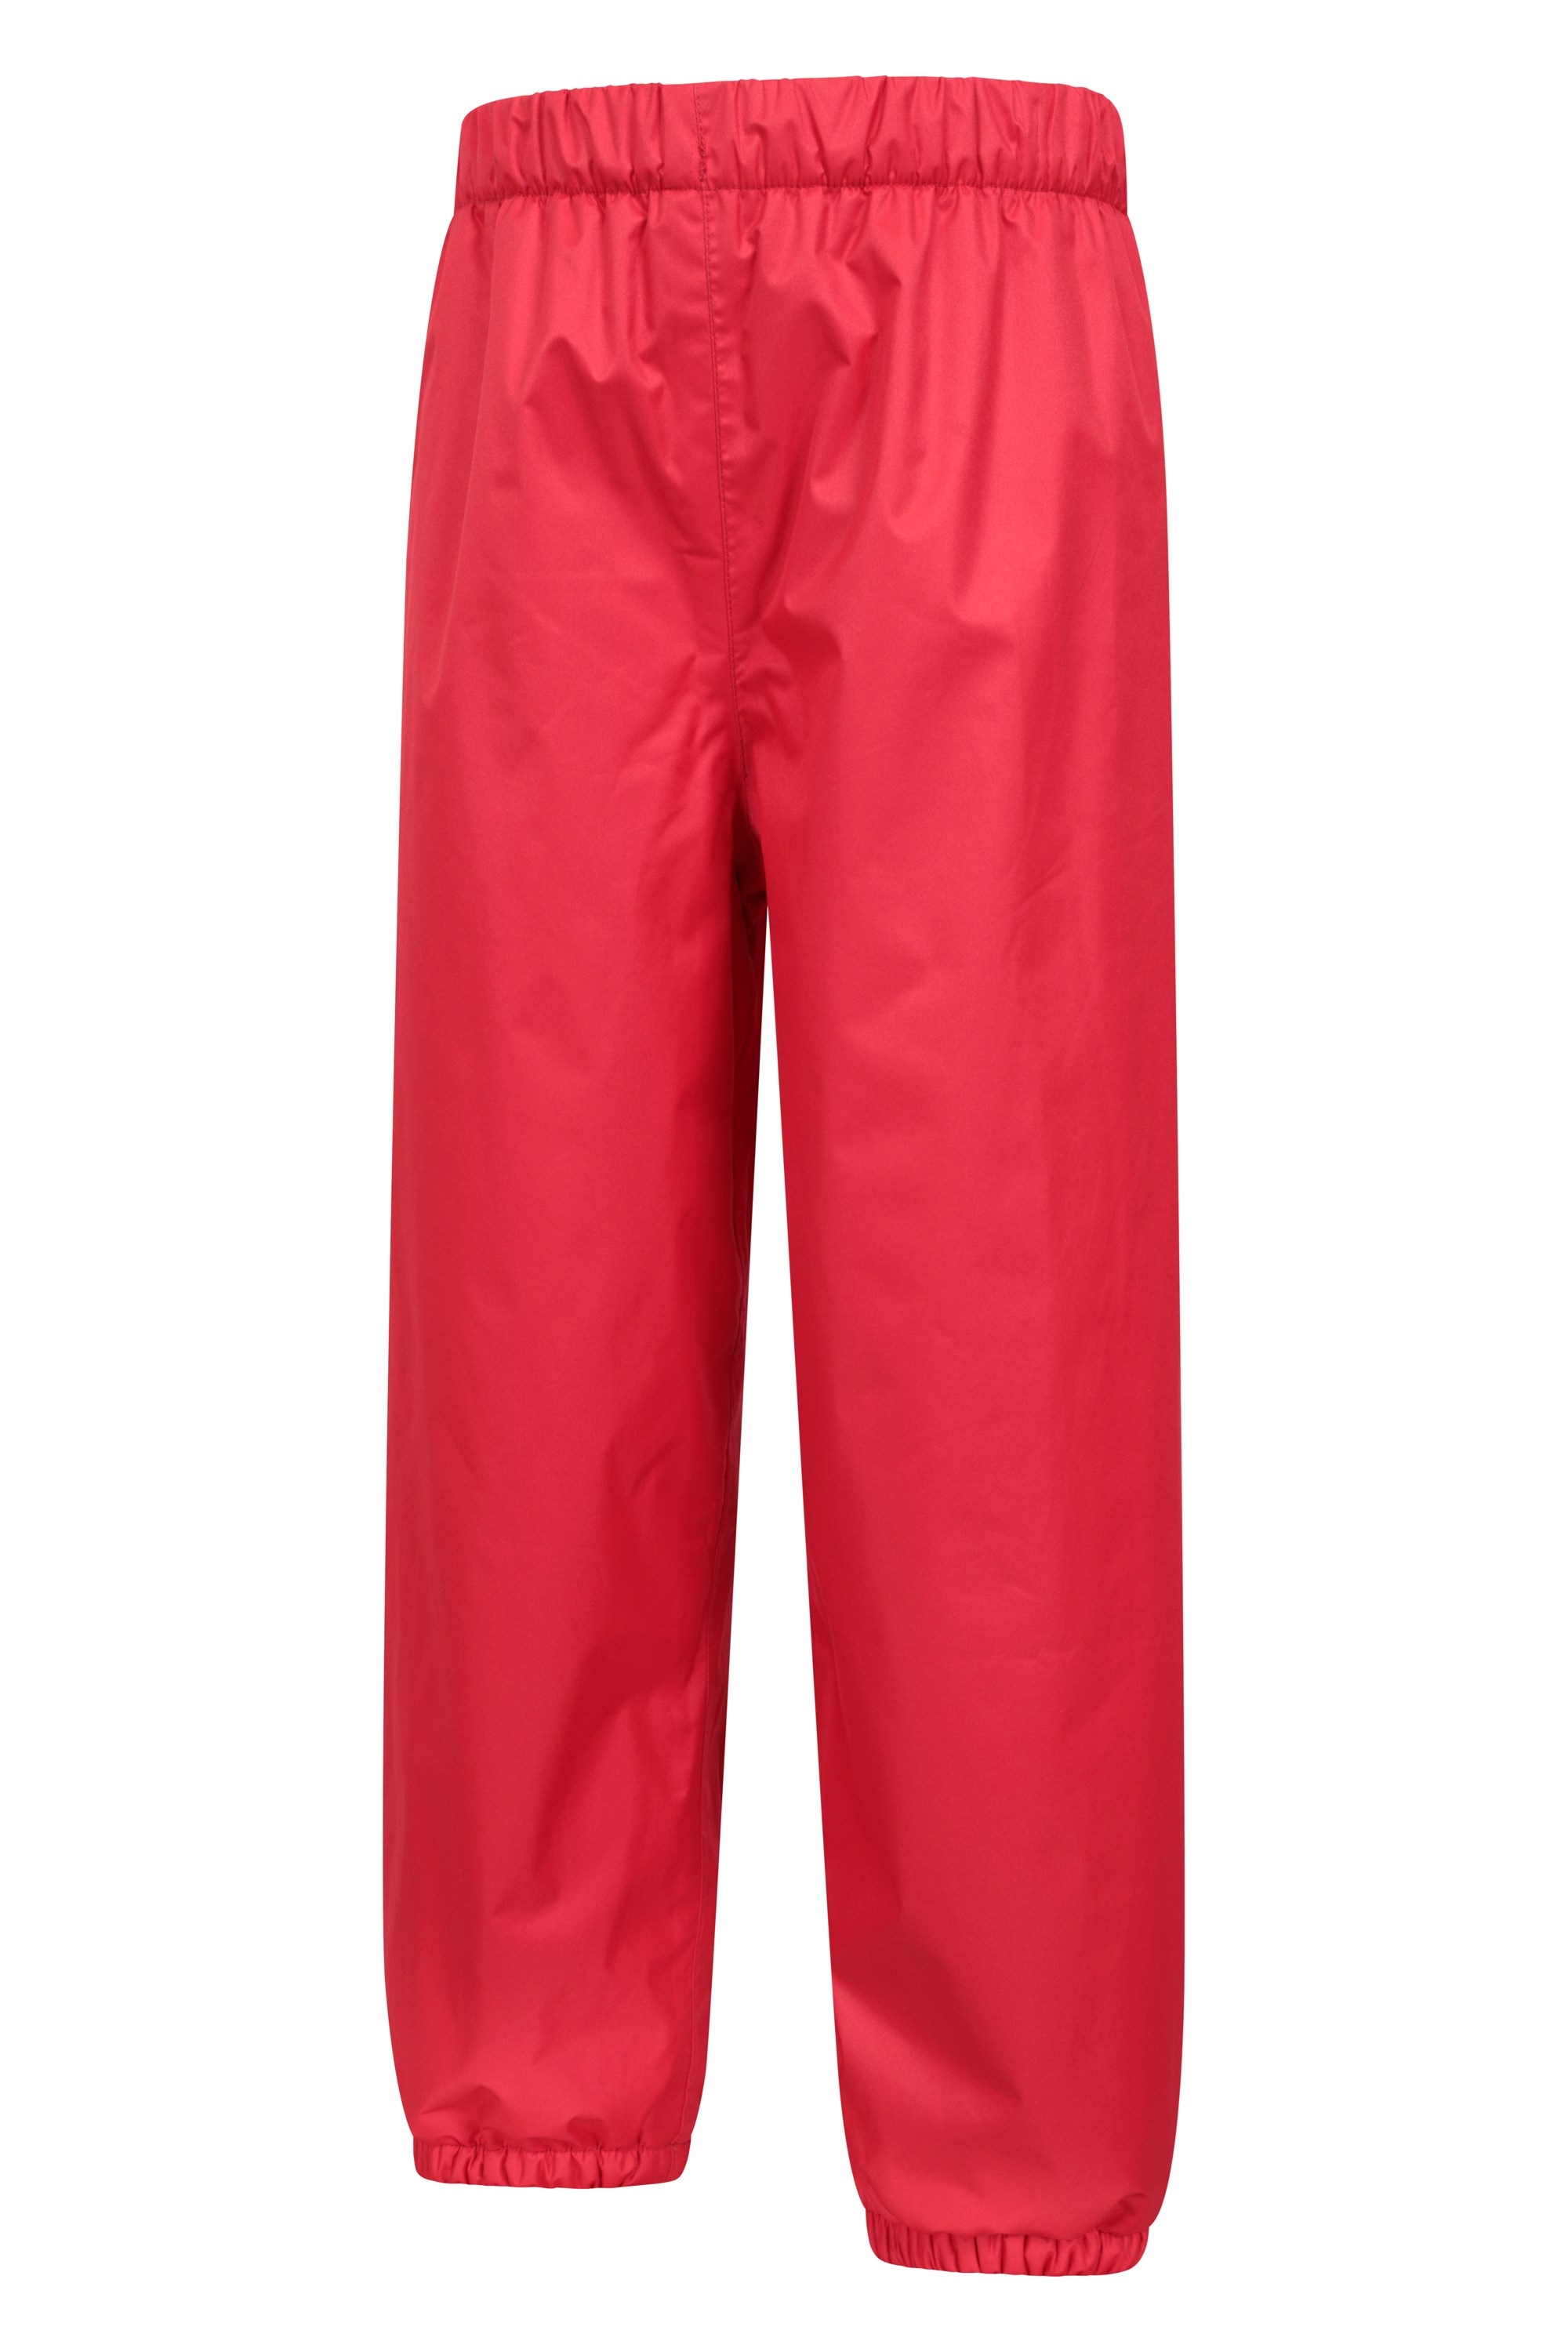 Lady Fleece Lined Hiking Pants Waterproof Trousers Windproof Outdoor Soft  Shell | eBay